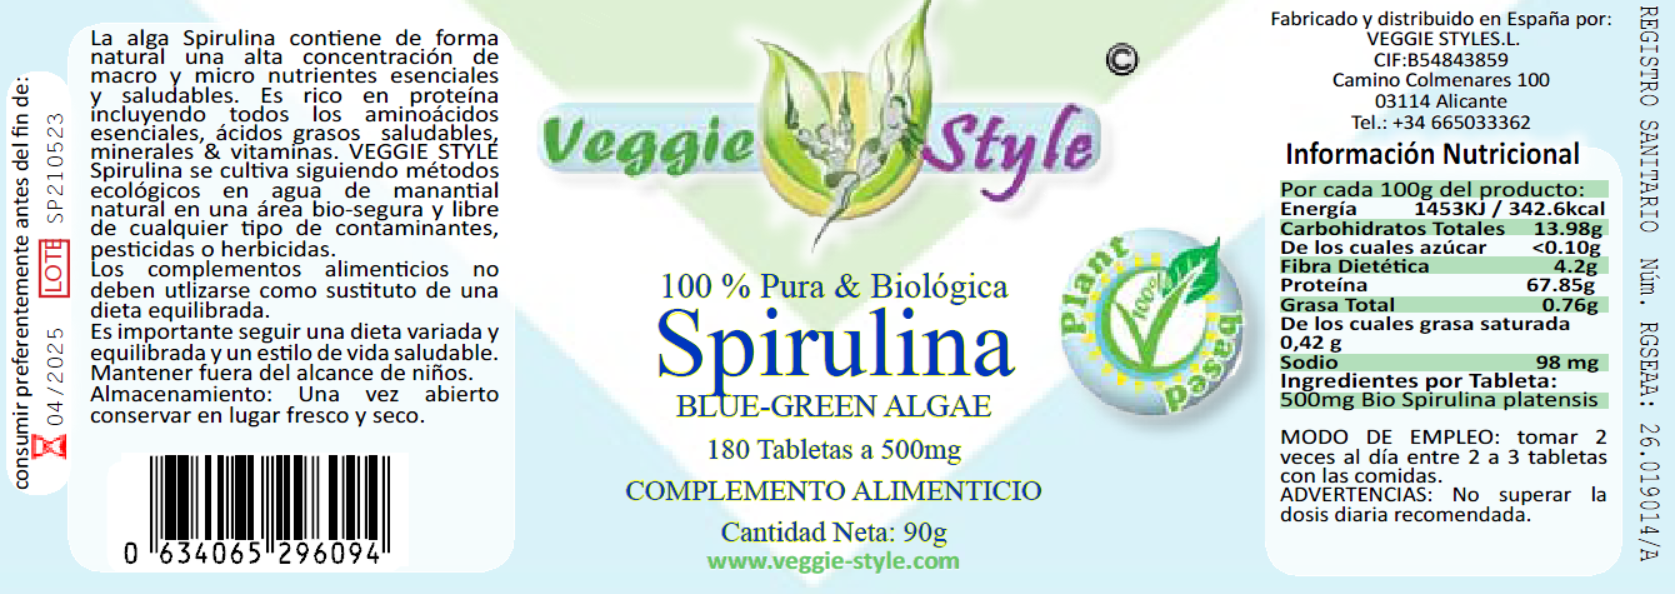 Producto-veggie-style-spirulina